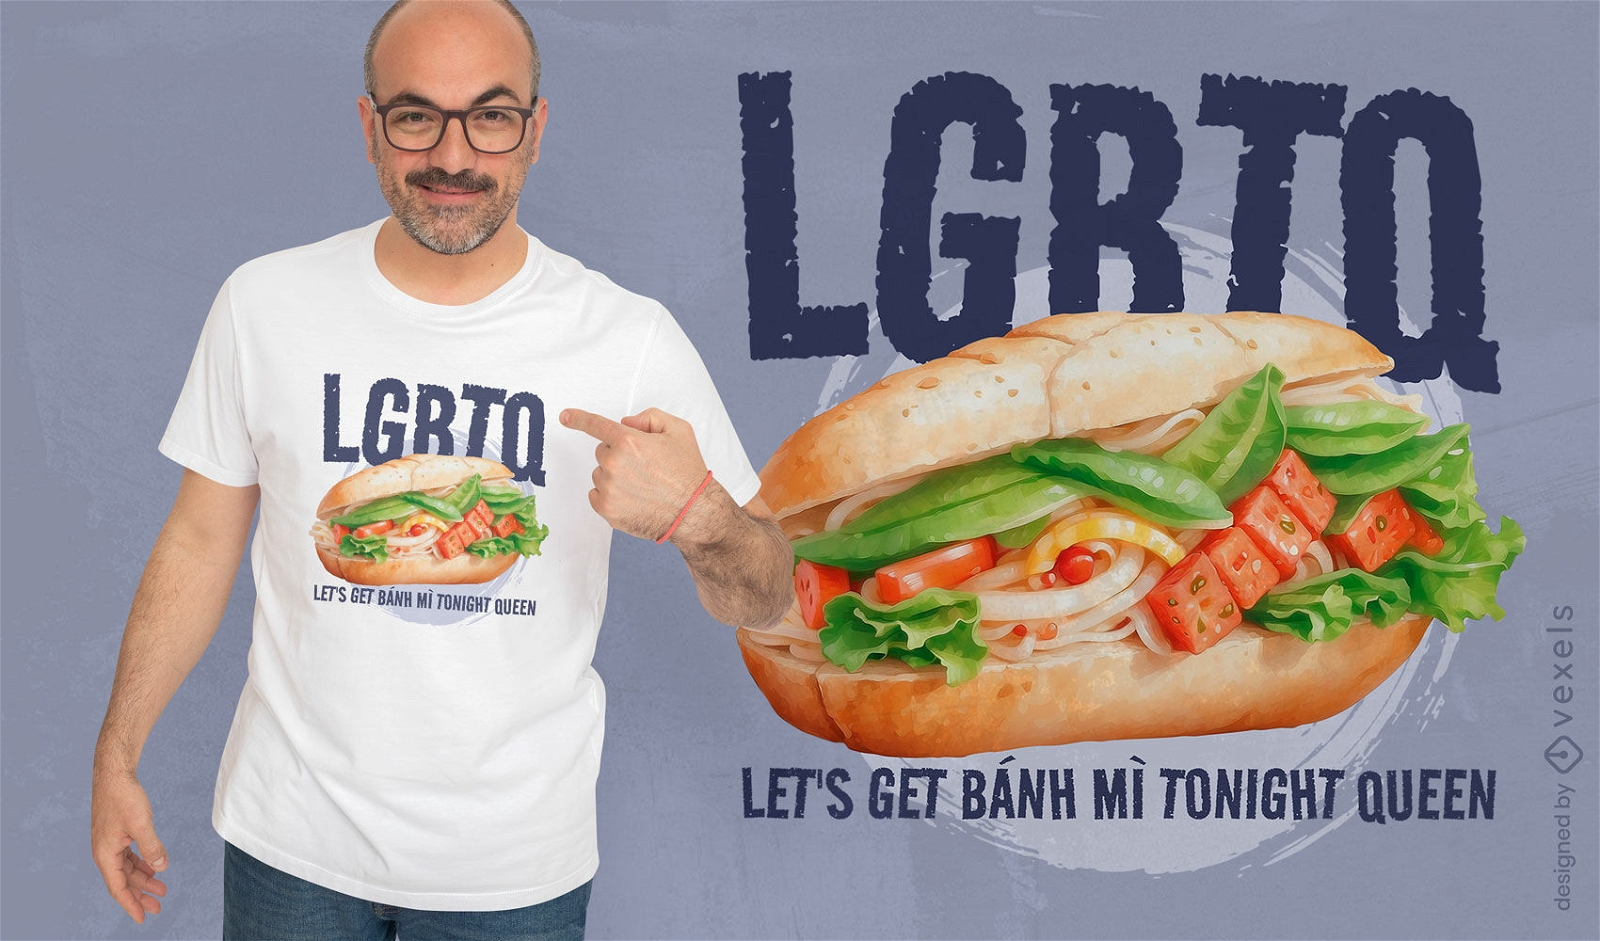 Dise?o de camiseta con cita tem?tica LGBTQ.